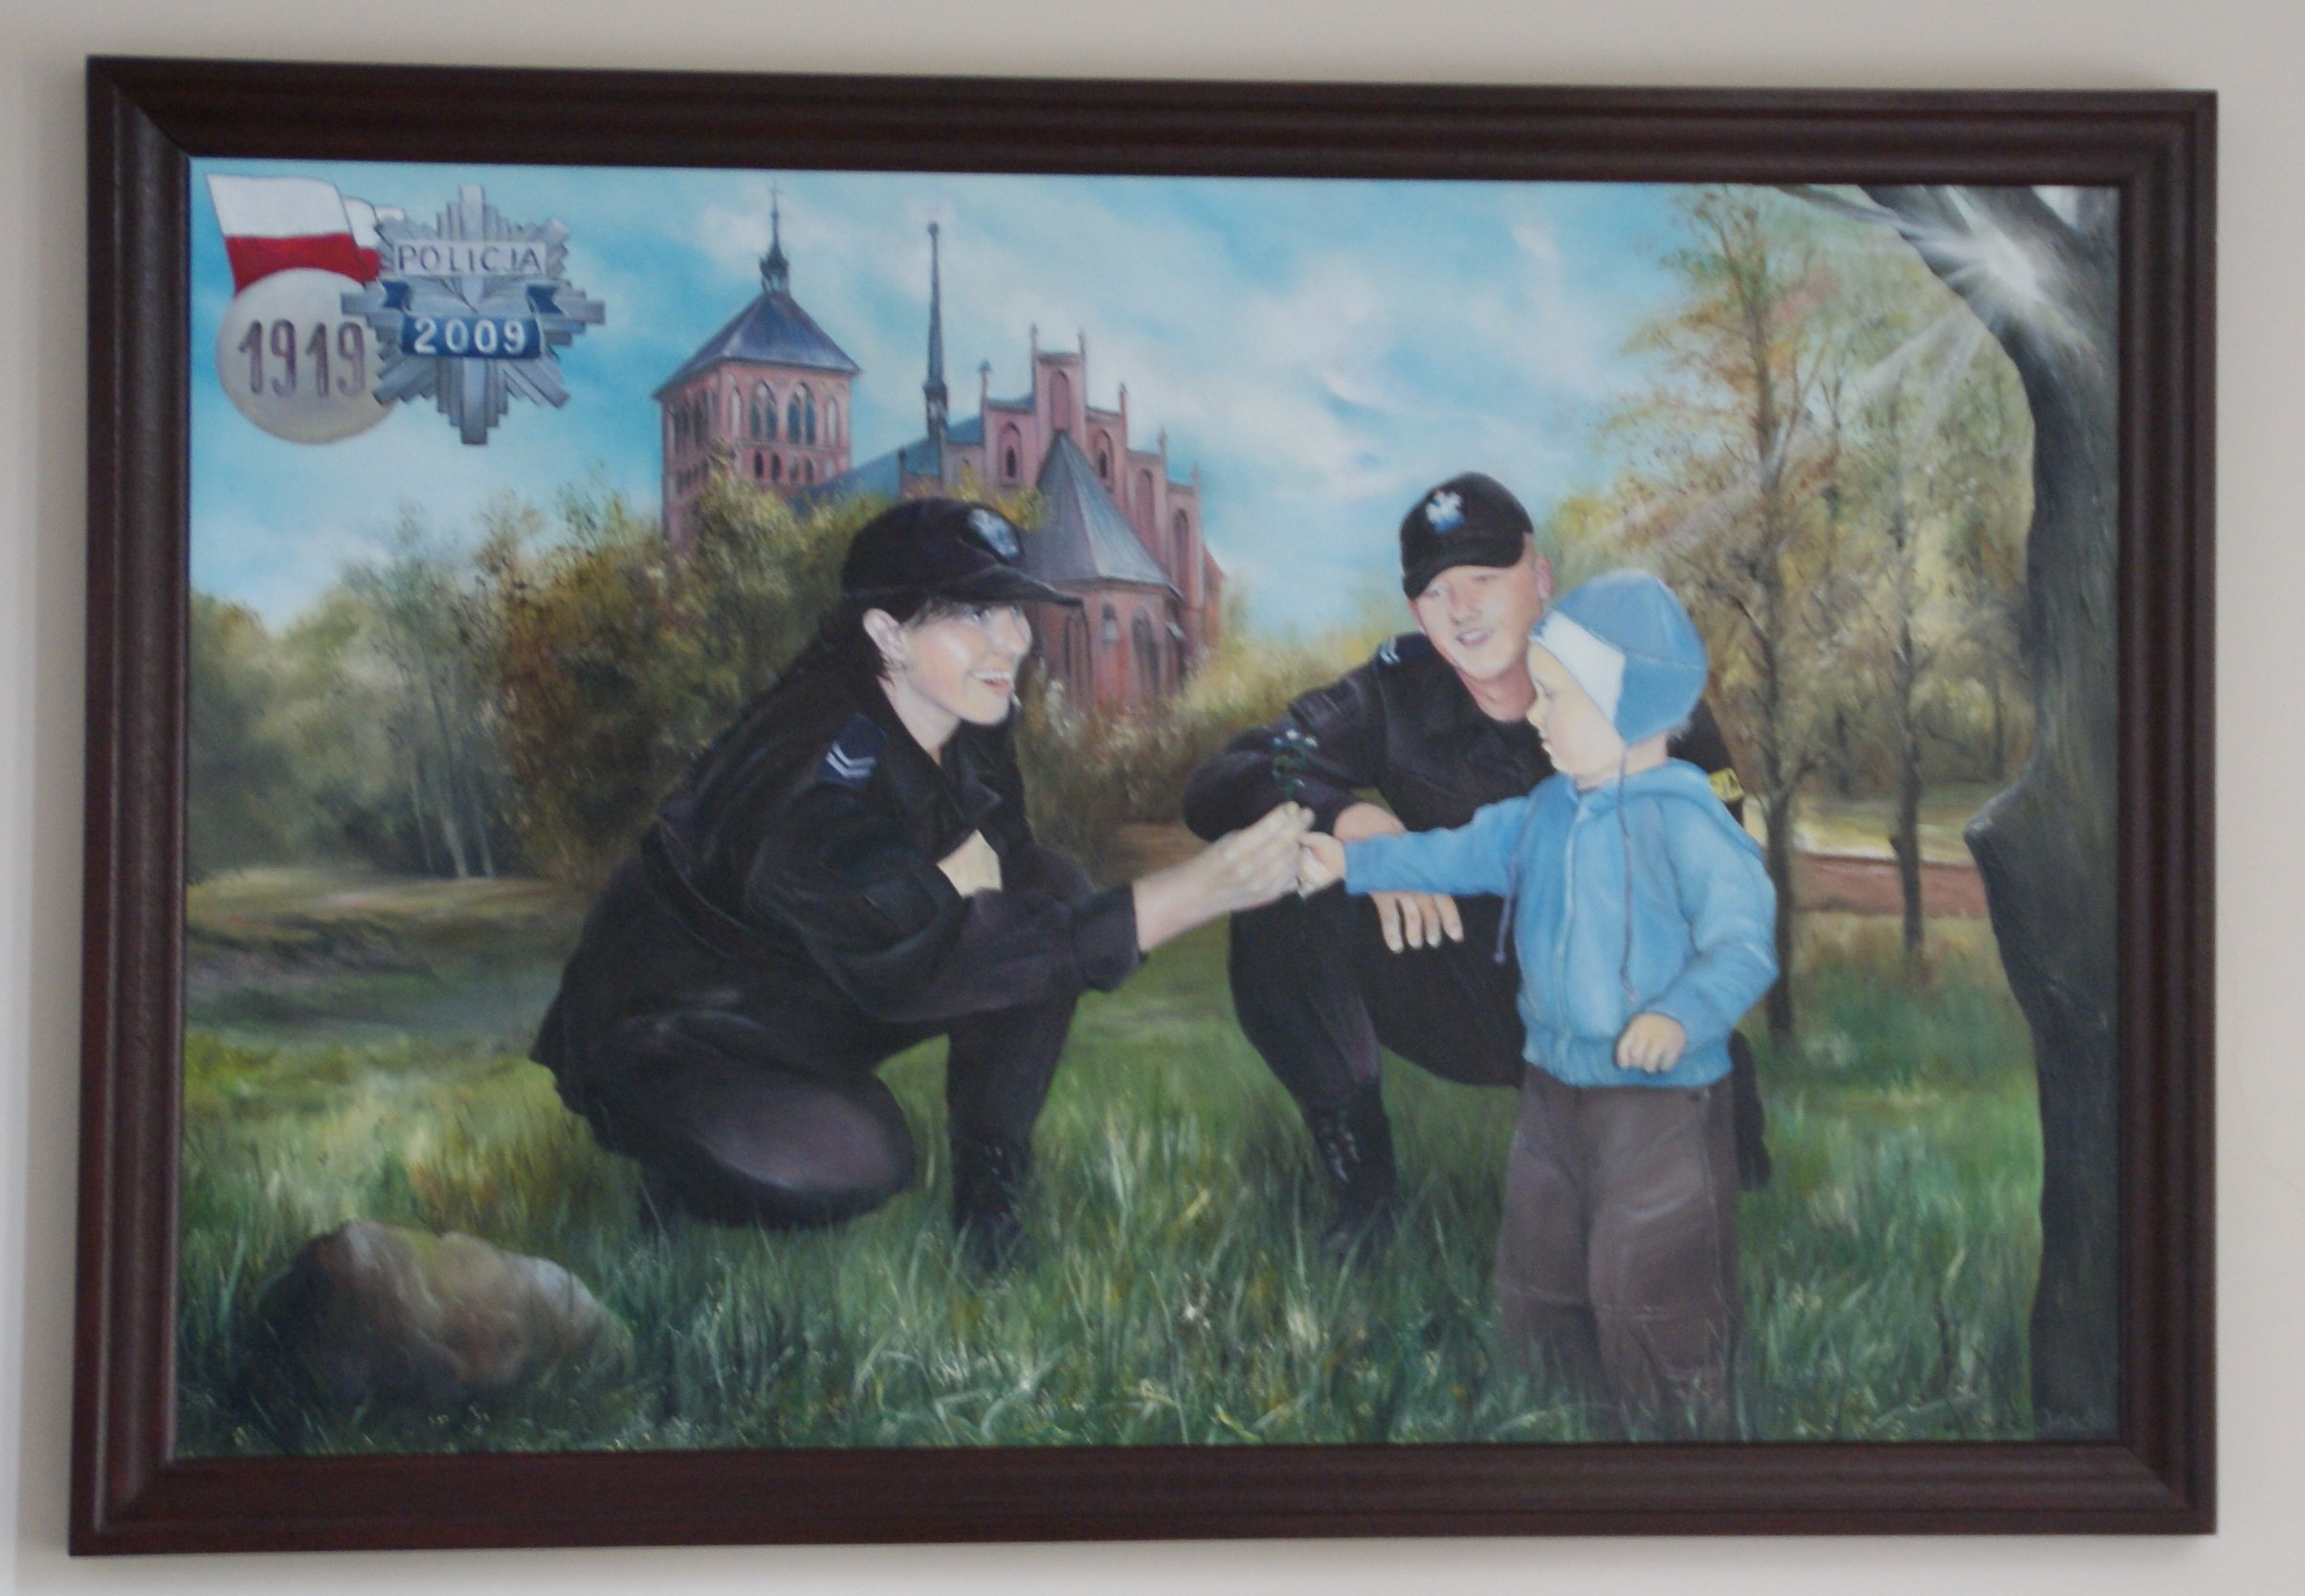 Obraz znajdujący się w holu Komendy Powiatowej Policji w Braniewie, którego współautorem jest st.asp.Orłowski